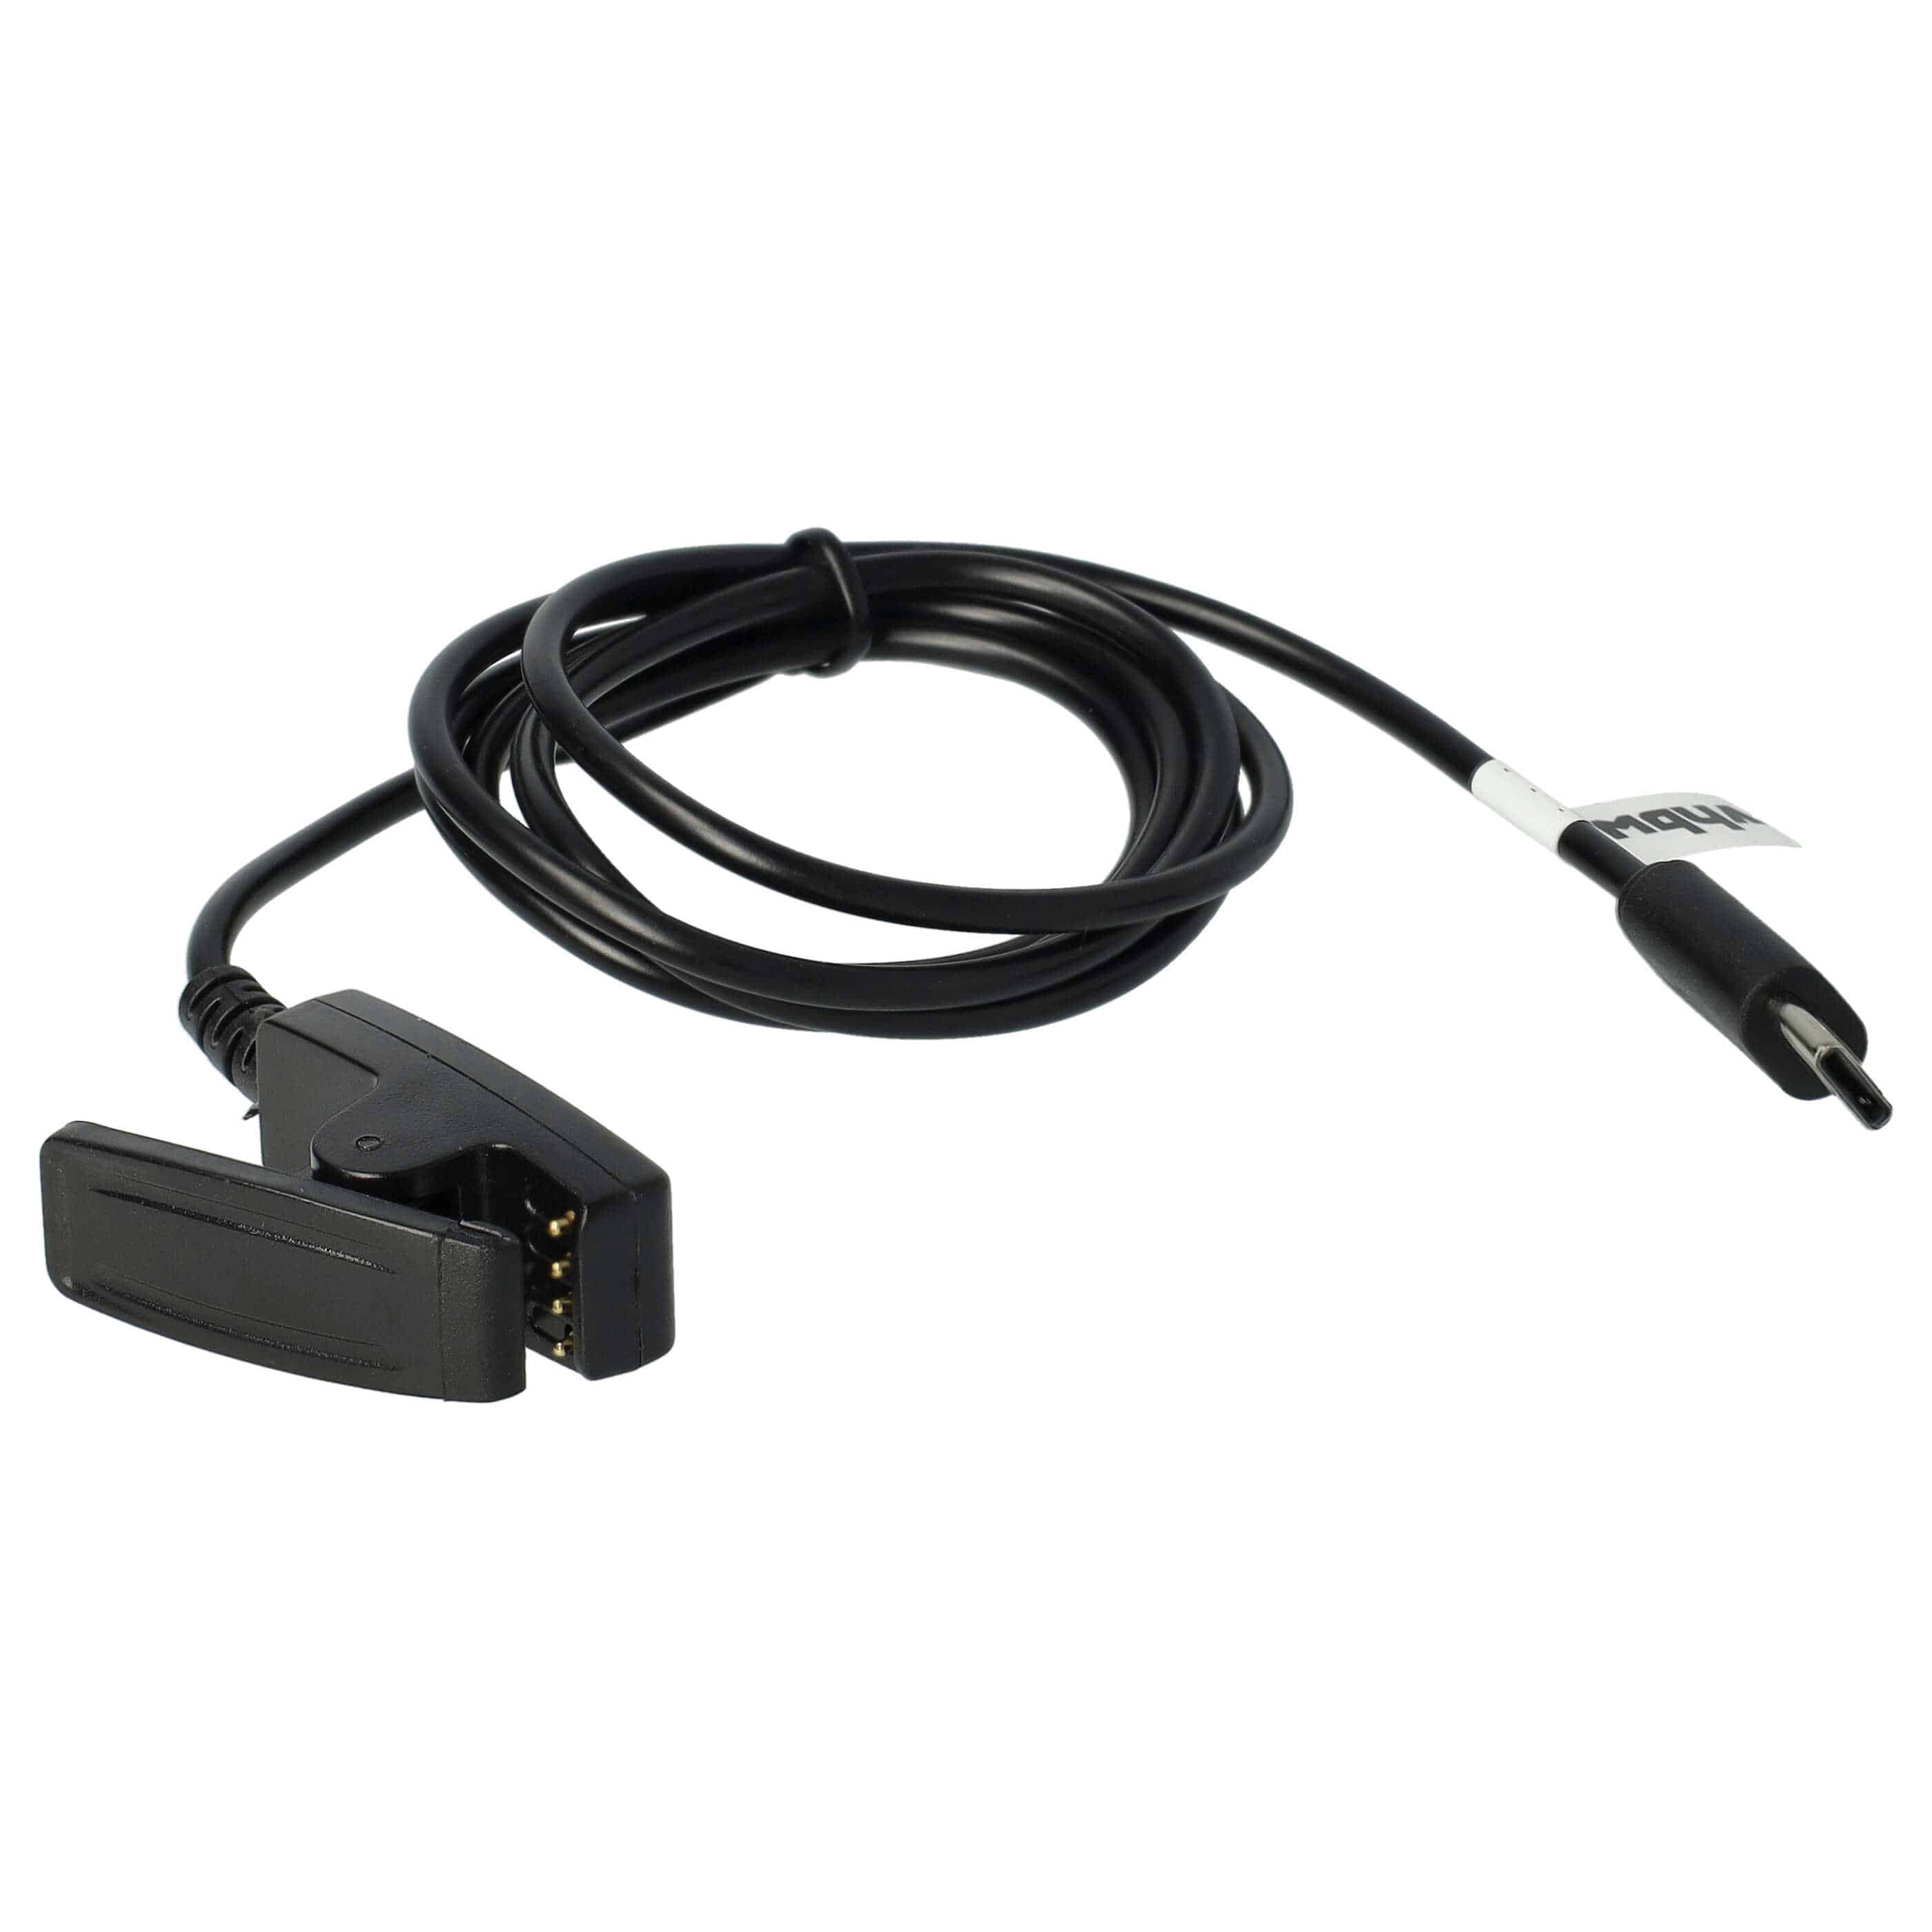 Kabel do ładowania smartwatch Garmin zamiennik Garmin 010-13289-00 - Kabel USB C, 100 cm, czarny